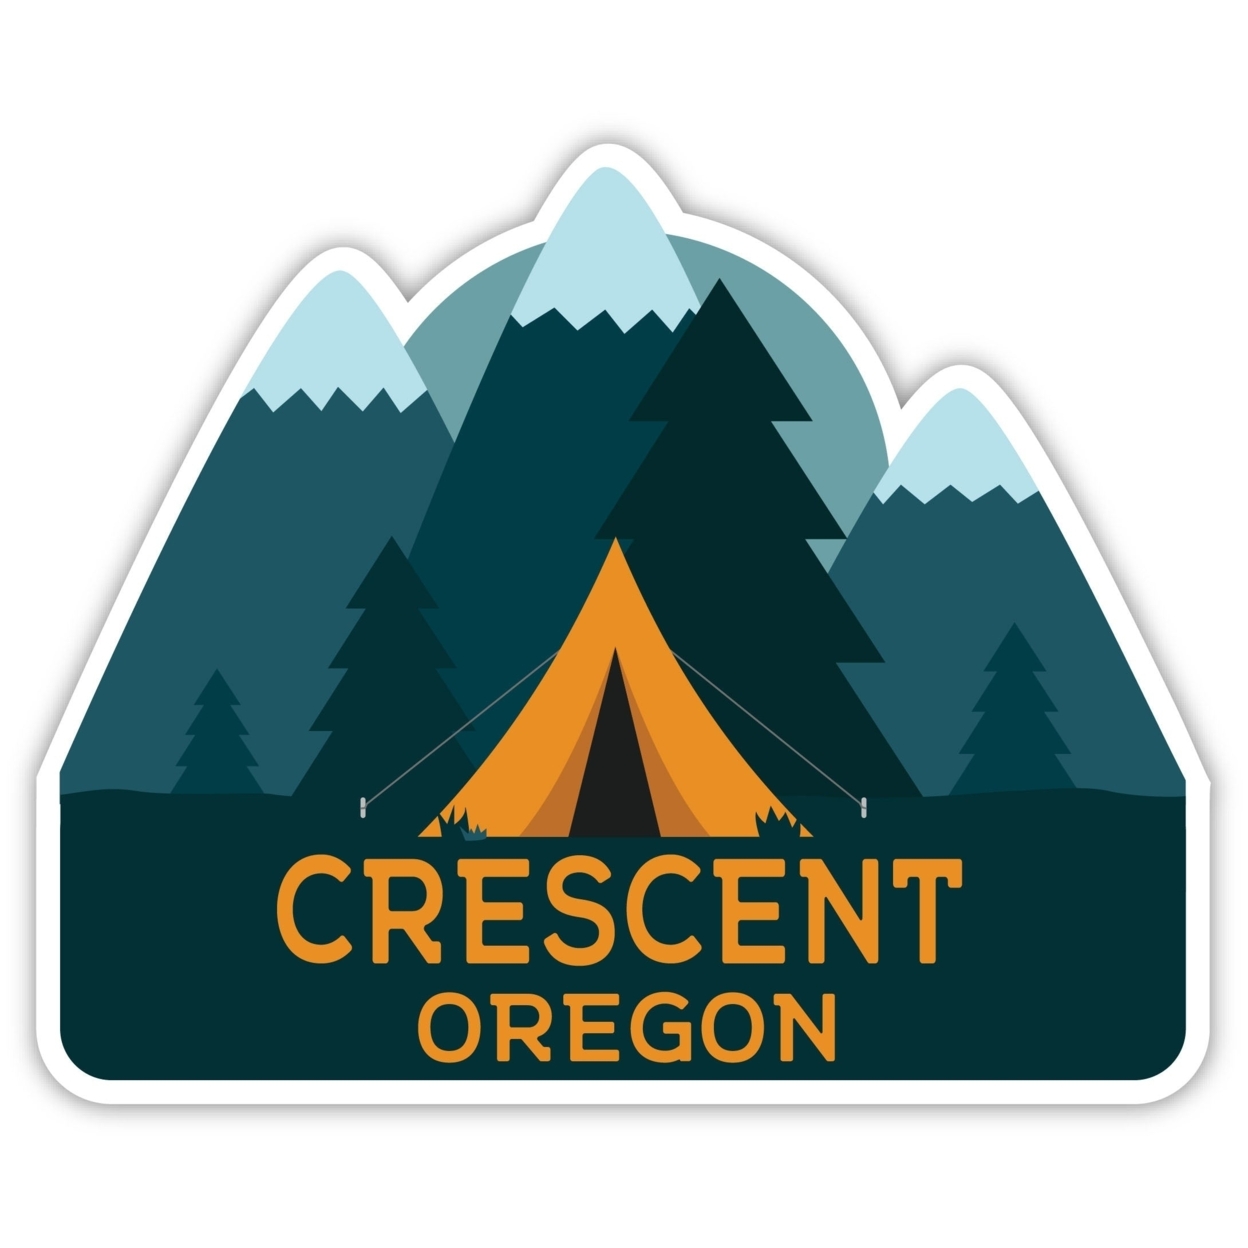 Crescent Oregon Souvenir Decorative Stickers (Choose Theme And Size) - Single Unit, 12-Inch, Tent